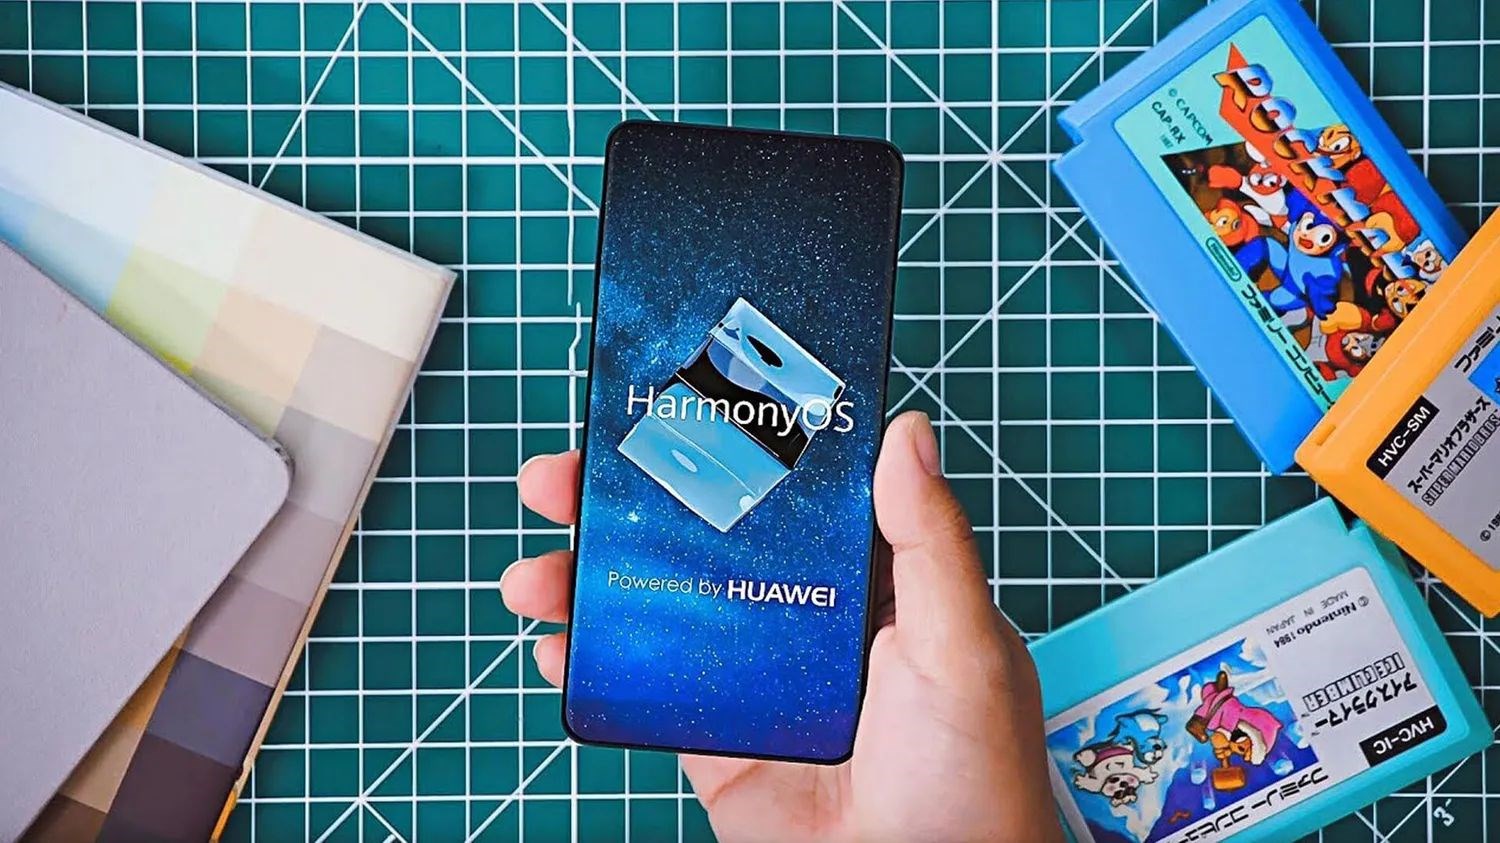 Androidsiz ilk Huawei telefon yıl sonundan önce piyasaya sürülecek